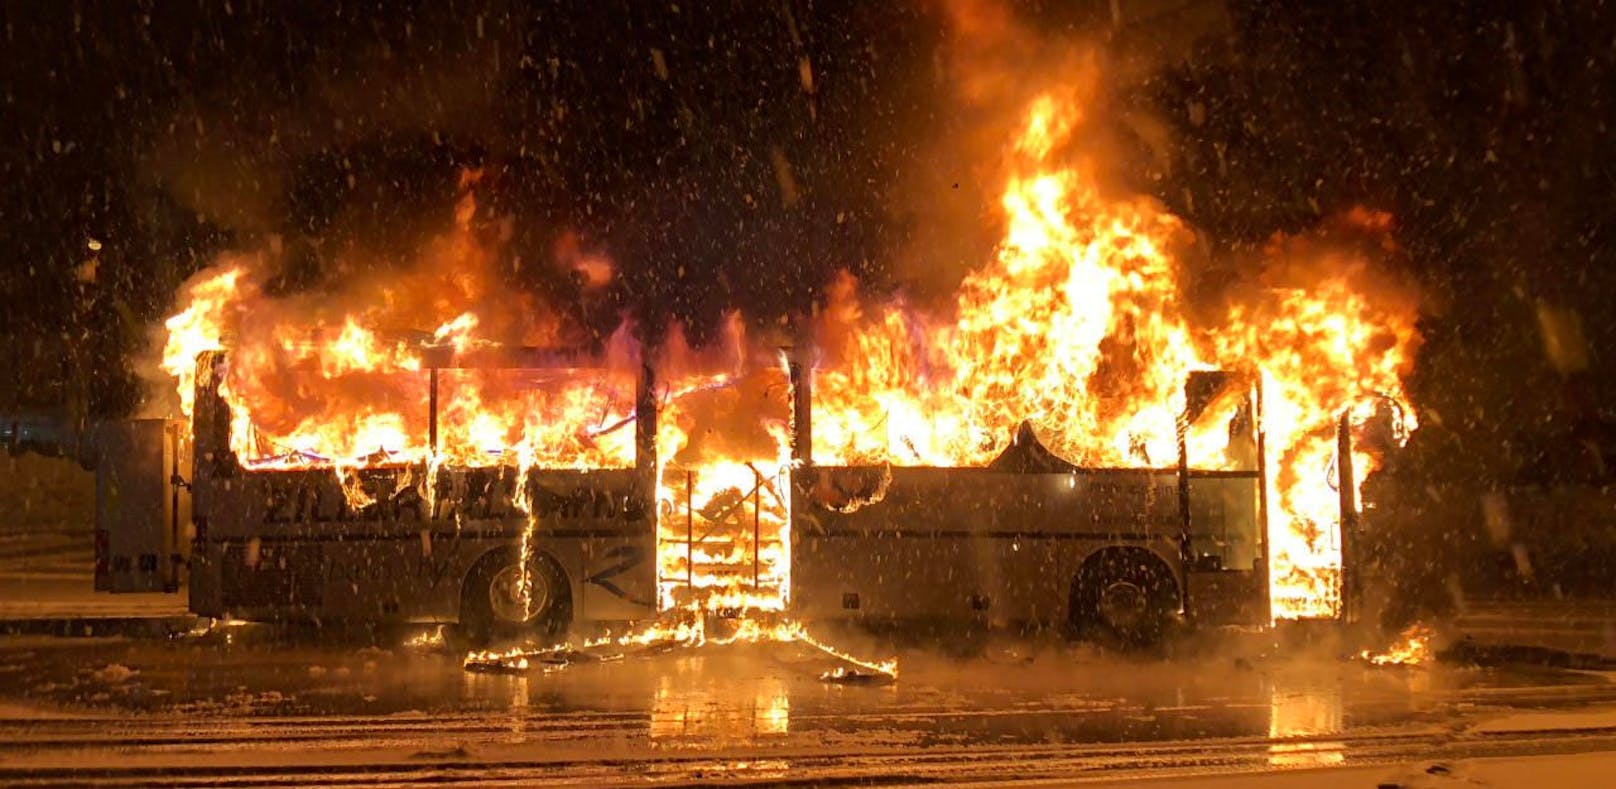 Fahrer fuhr brennenden Öffi-Bus aus Garage